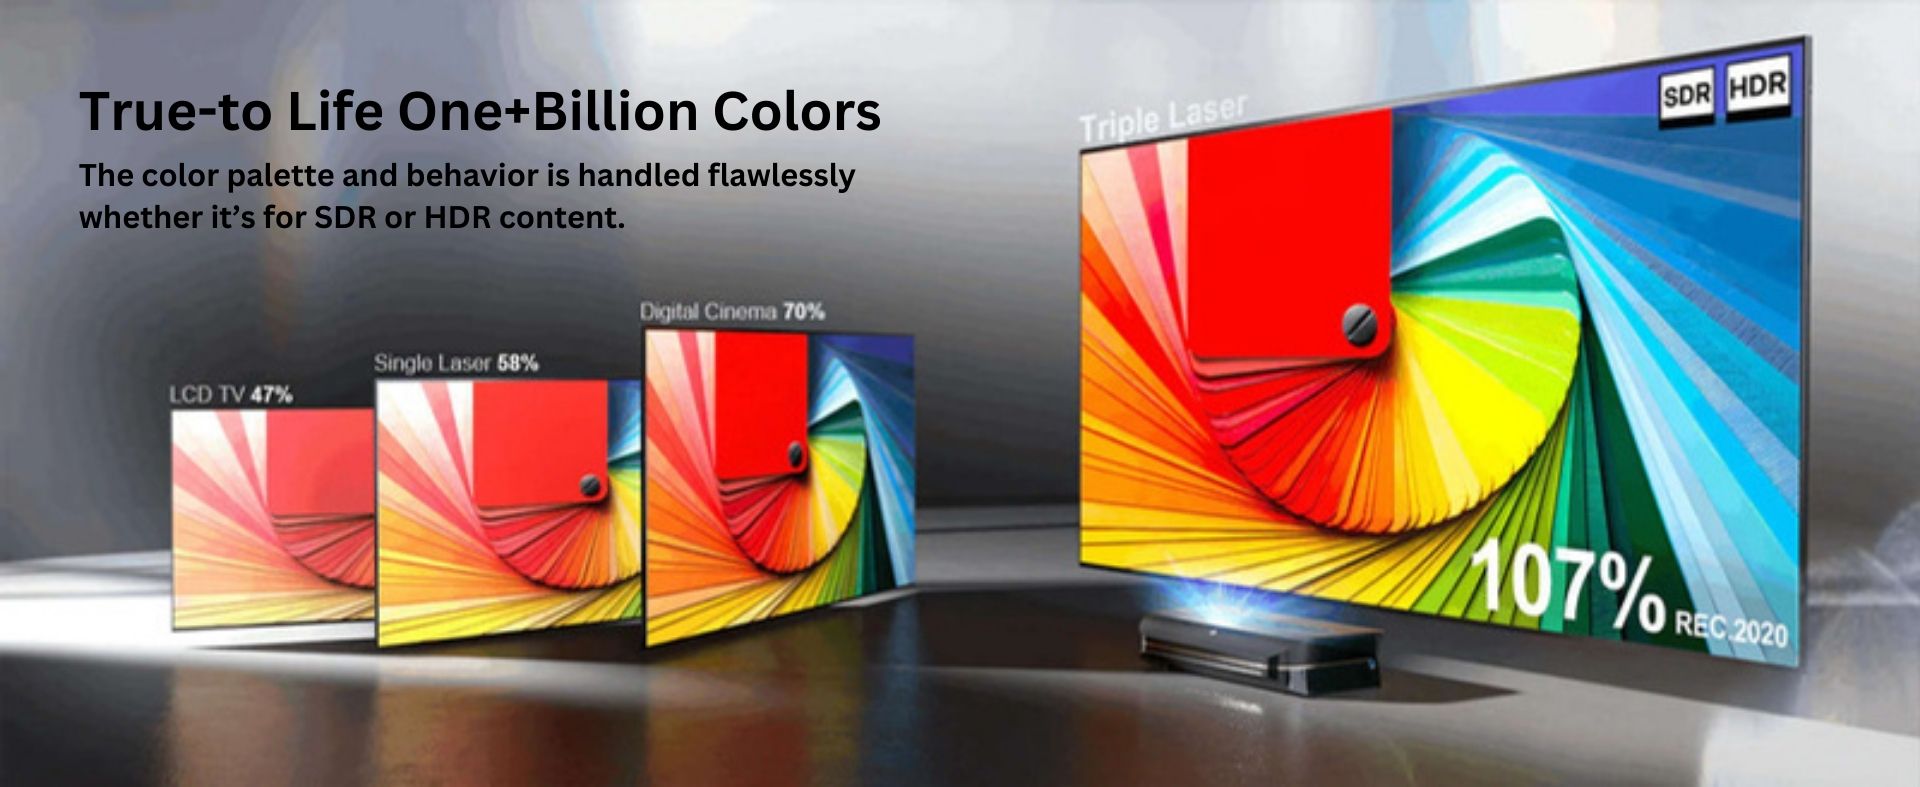 Awol Vision LTV-2500 | Plus d'un milliard de couleurs fidèles à la réalité | La palette et le comportement des couleurs sont parfaitement gérés, qu'il s'agisse de contenu SDR ou HDR.